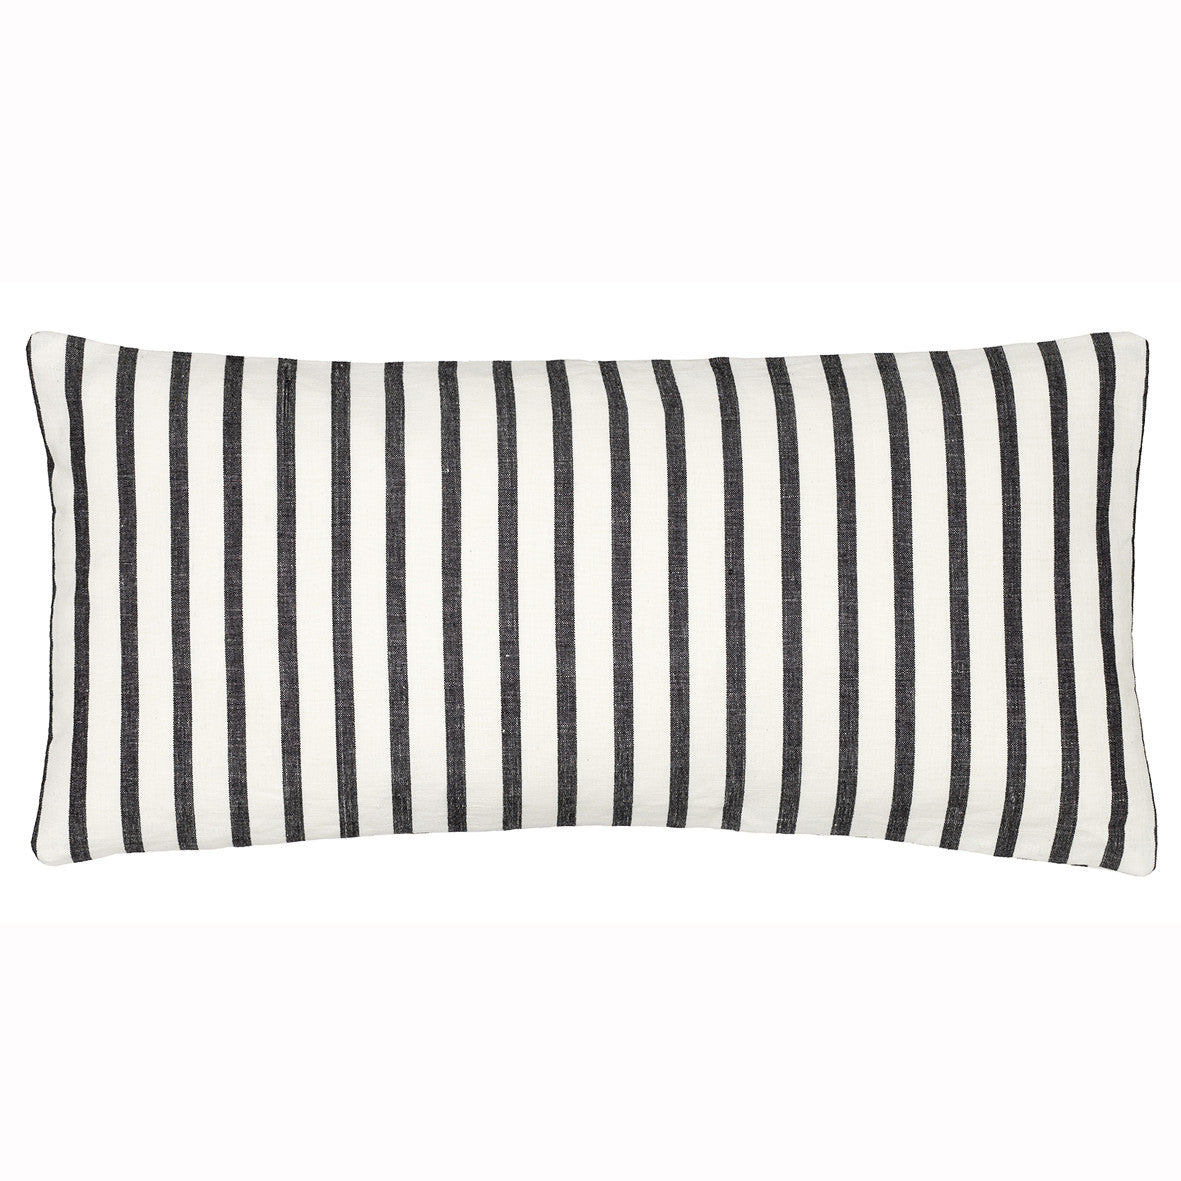 Autumn Ticking Stripe Rectangle Decorative Throw Pillow Lumbar - Black 30x60cm (12x24")